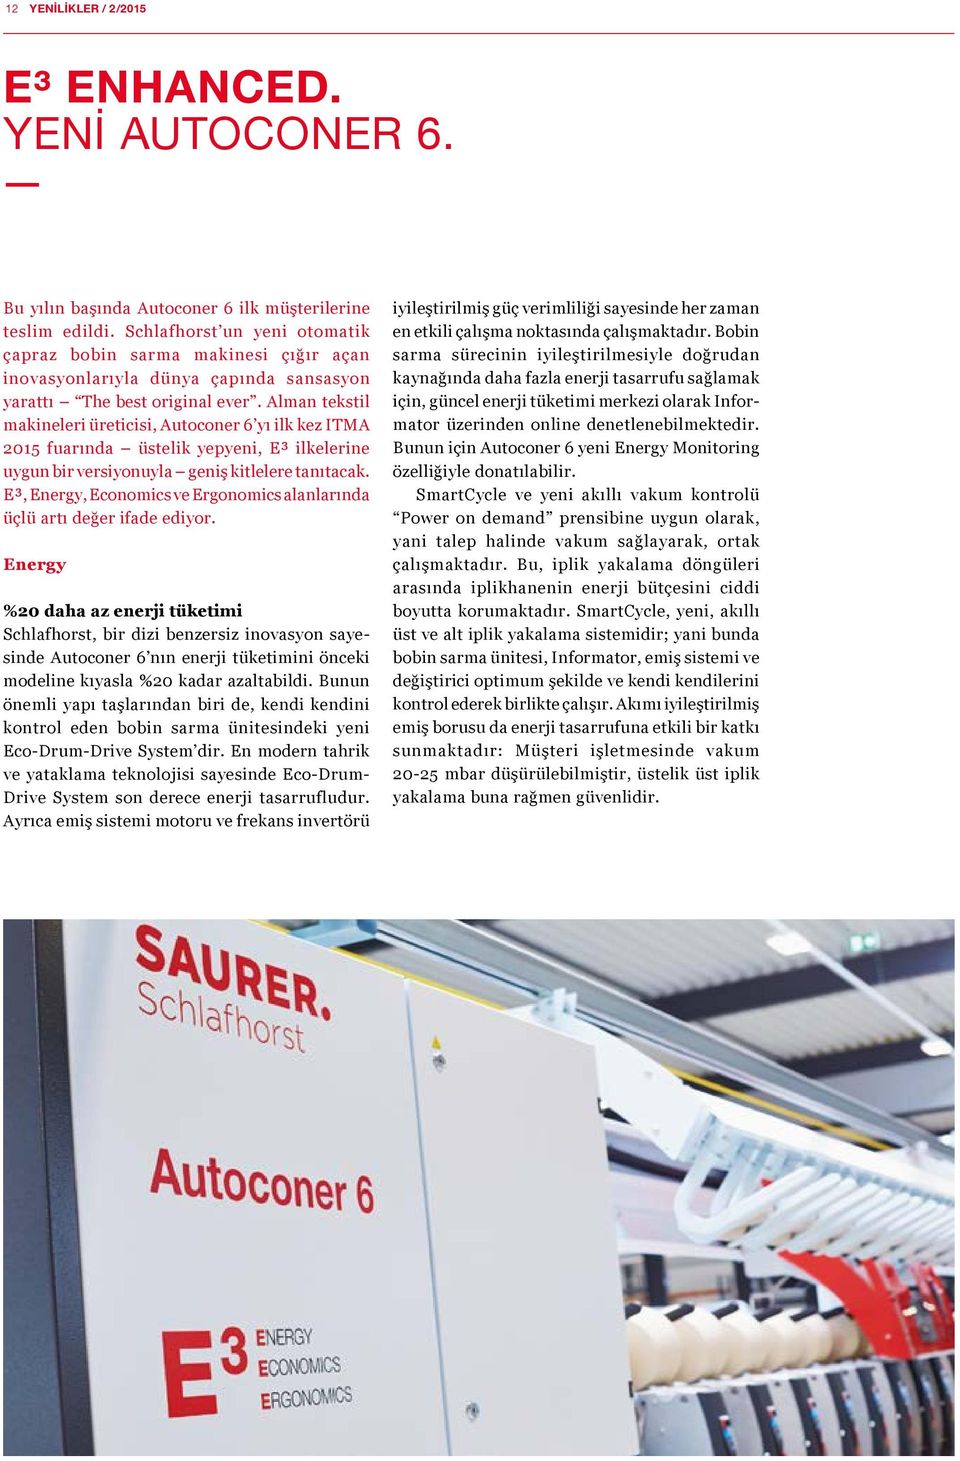 Alman tekstil makineleri üreticisi, Autoconer 6 yı ilk kez ITMA 2015 fuarında üstelik yepyeni, E³ ilkelerine uygun bir versiyonuyla geniş kitlelere tanıtacak.